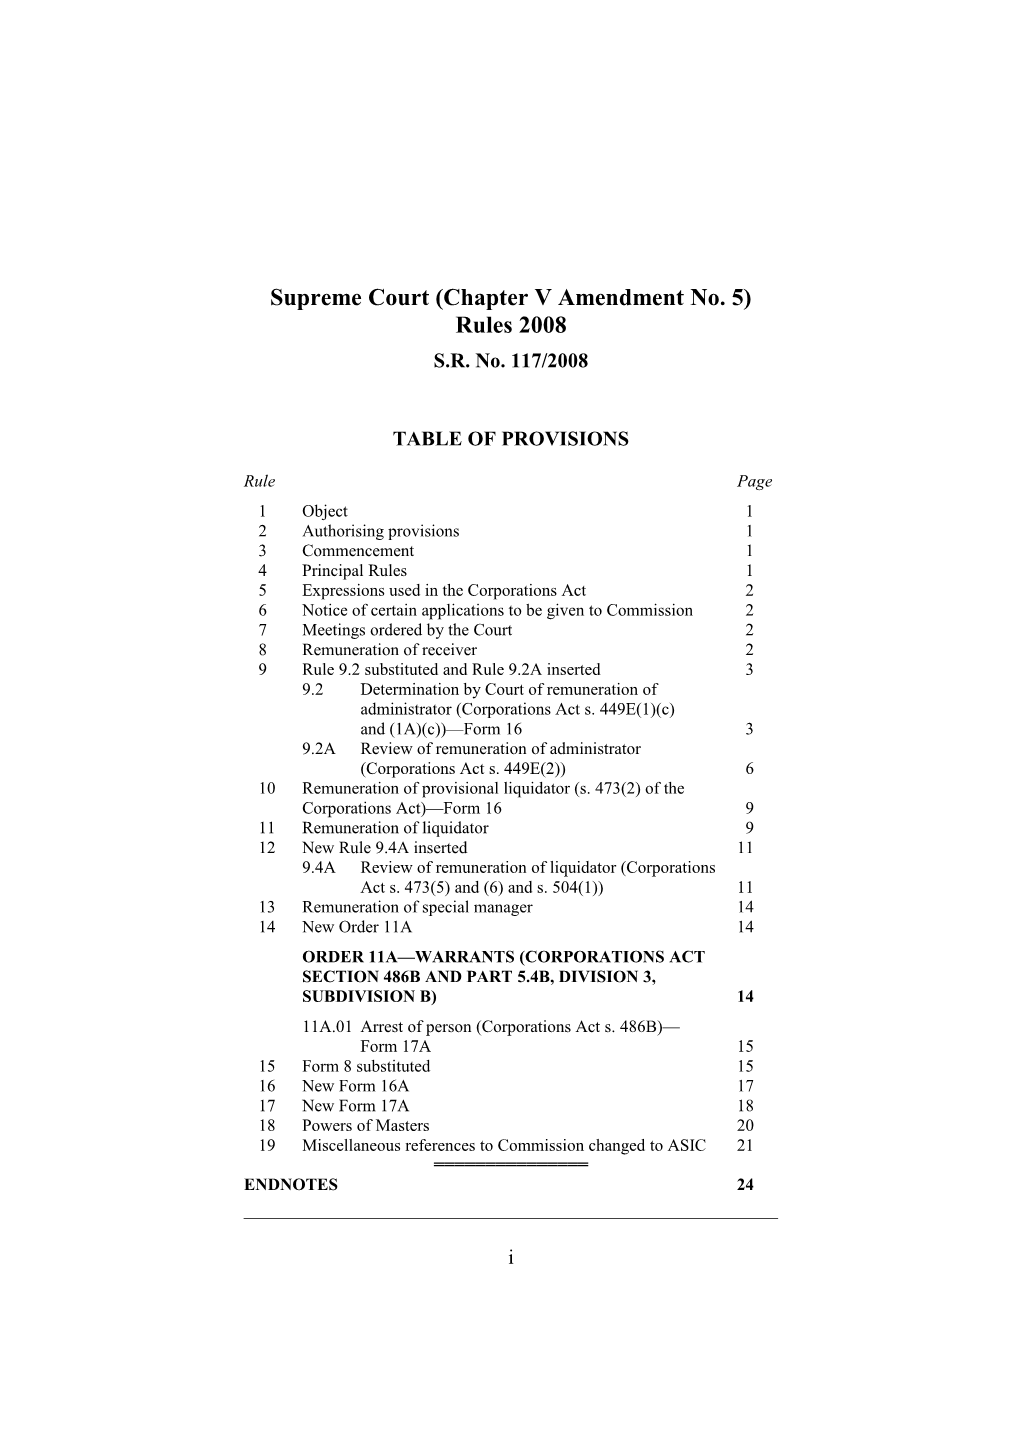 Supreme Court (Chapter V Amendment No. 5) Rules 2008